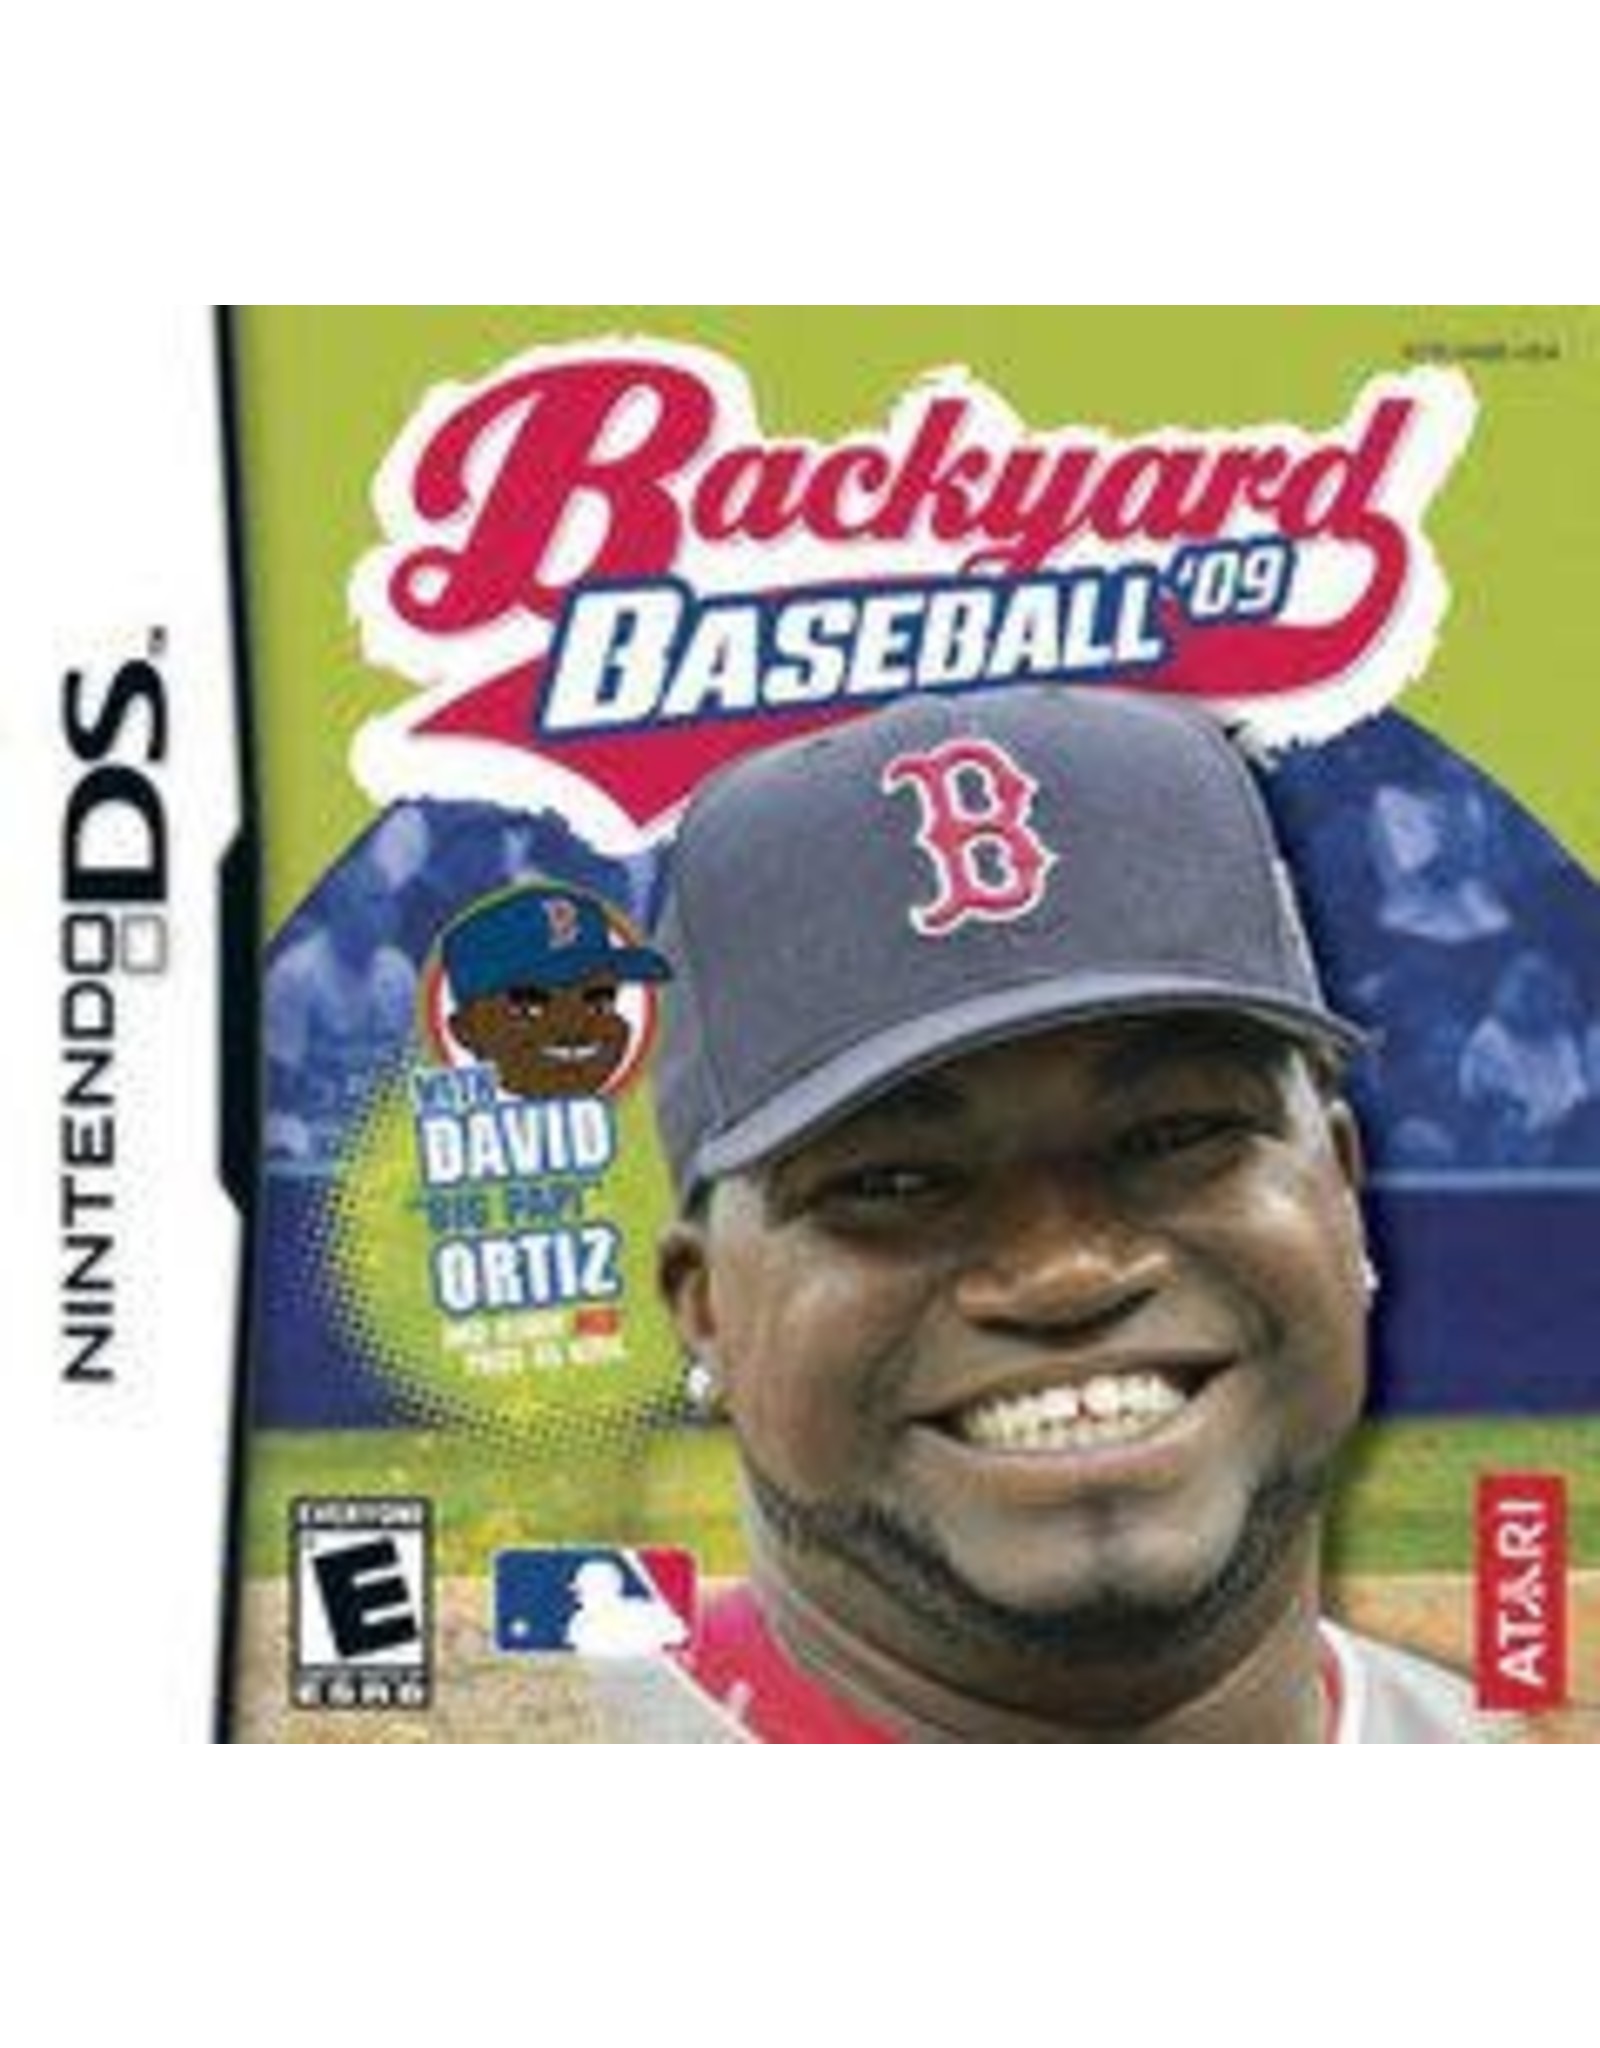 Nintendo DS Backyard Baseball 09 (Cart Only)